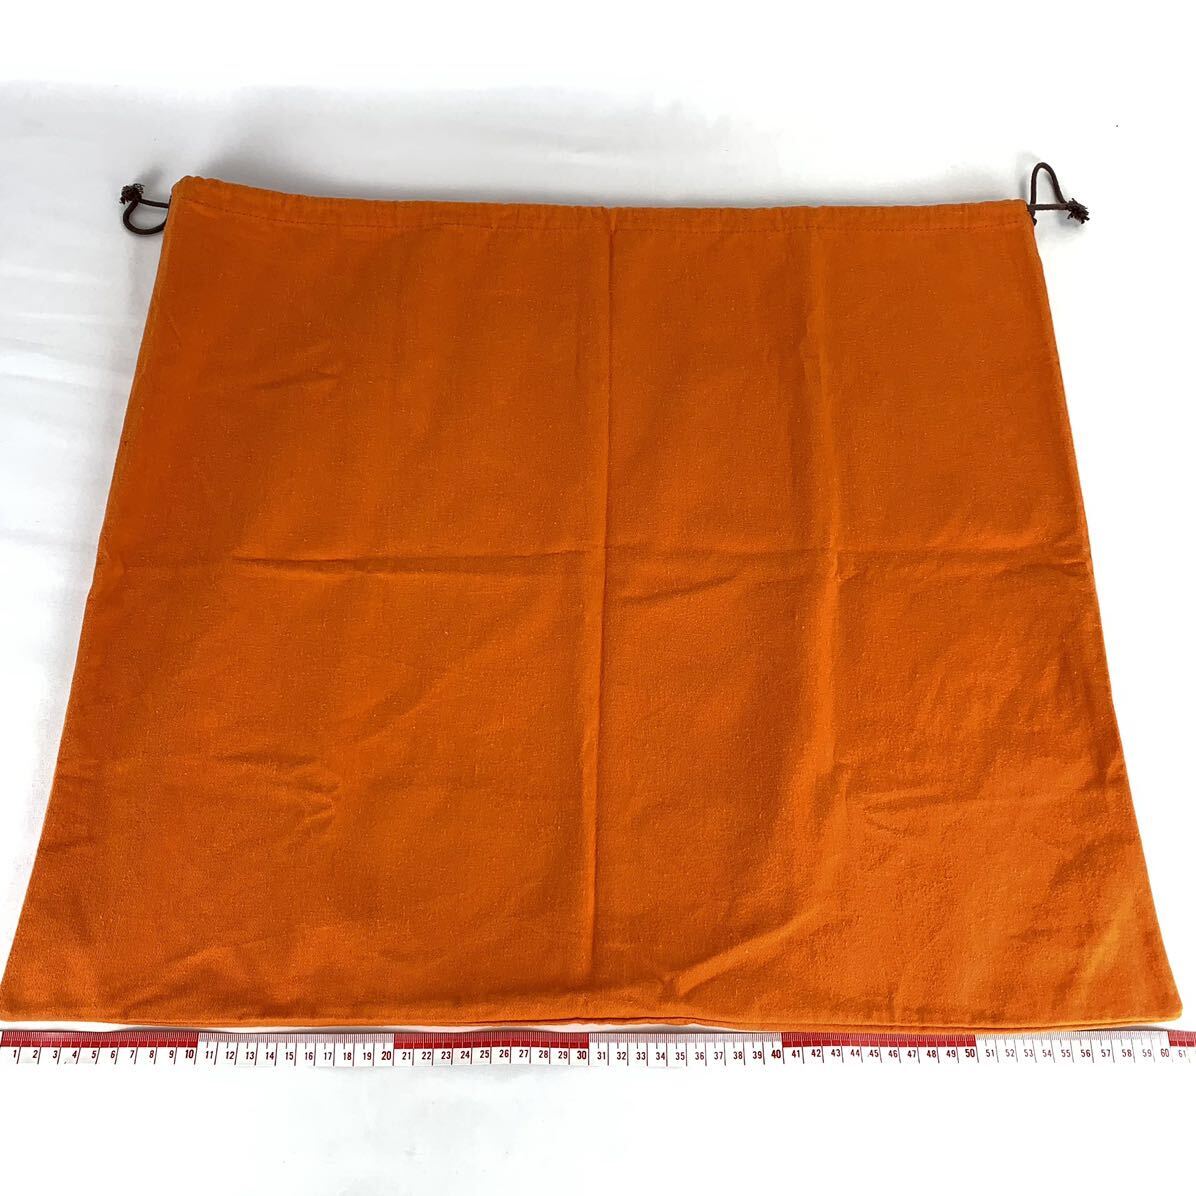 HERMES エルメス 保存袋 61×52 大型 特大 旧型 巾着袋 付属品 バッグ用 袋 オレンジ_画像2